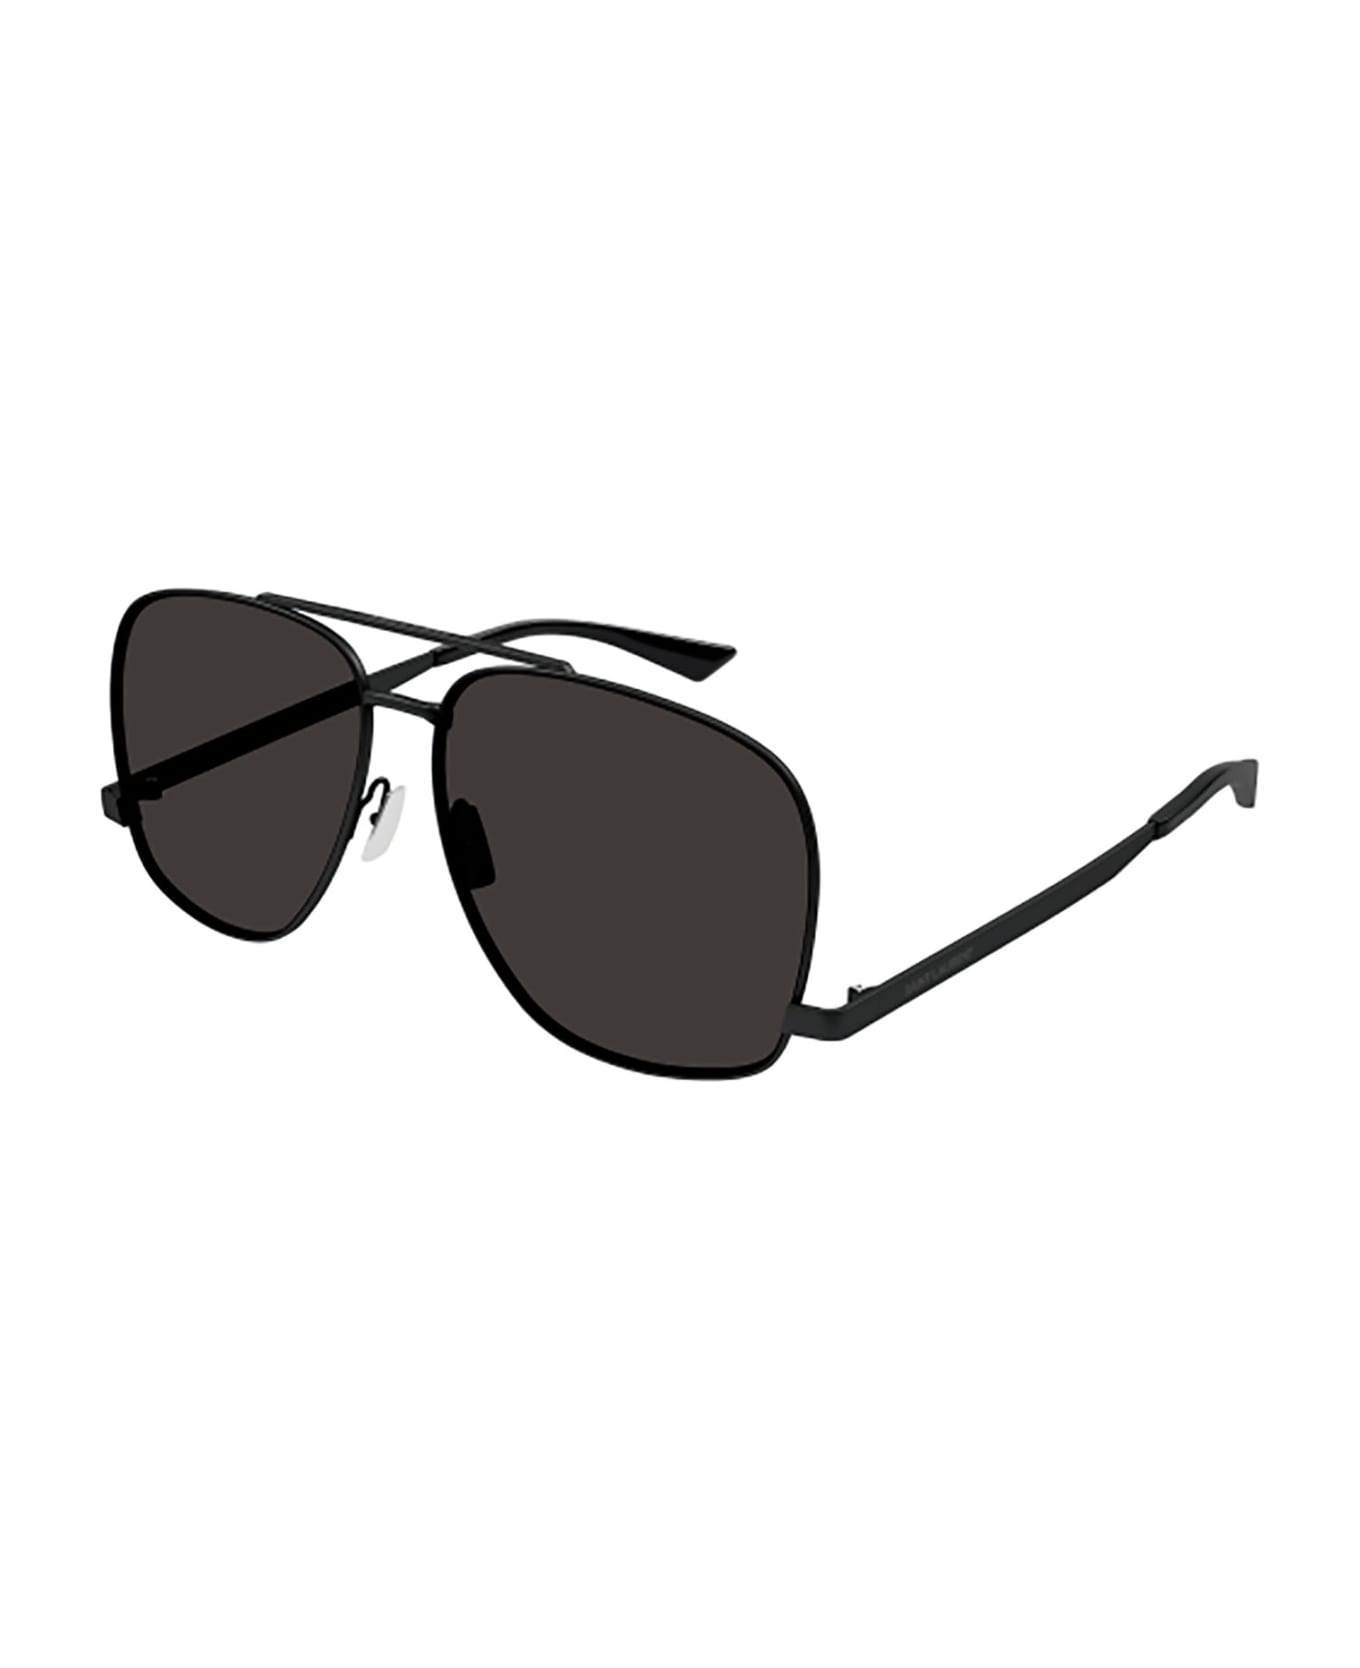 Saint Laurent Eyewear SL 653 LEON Sunglasses - Black Black Black